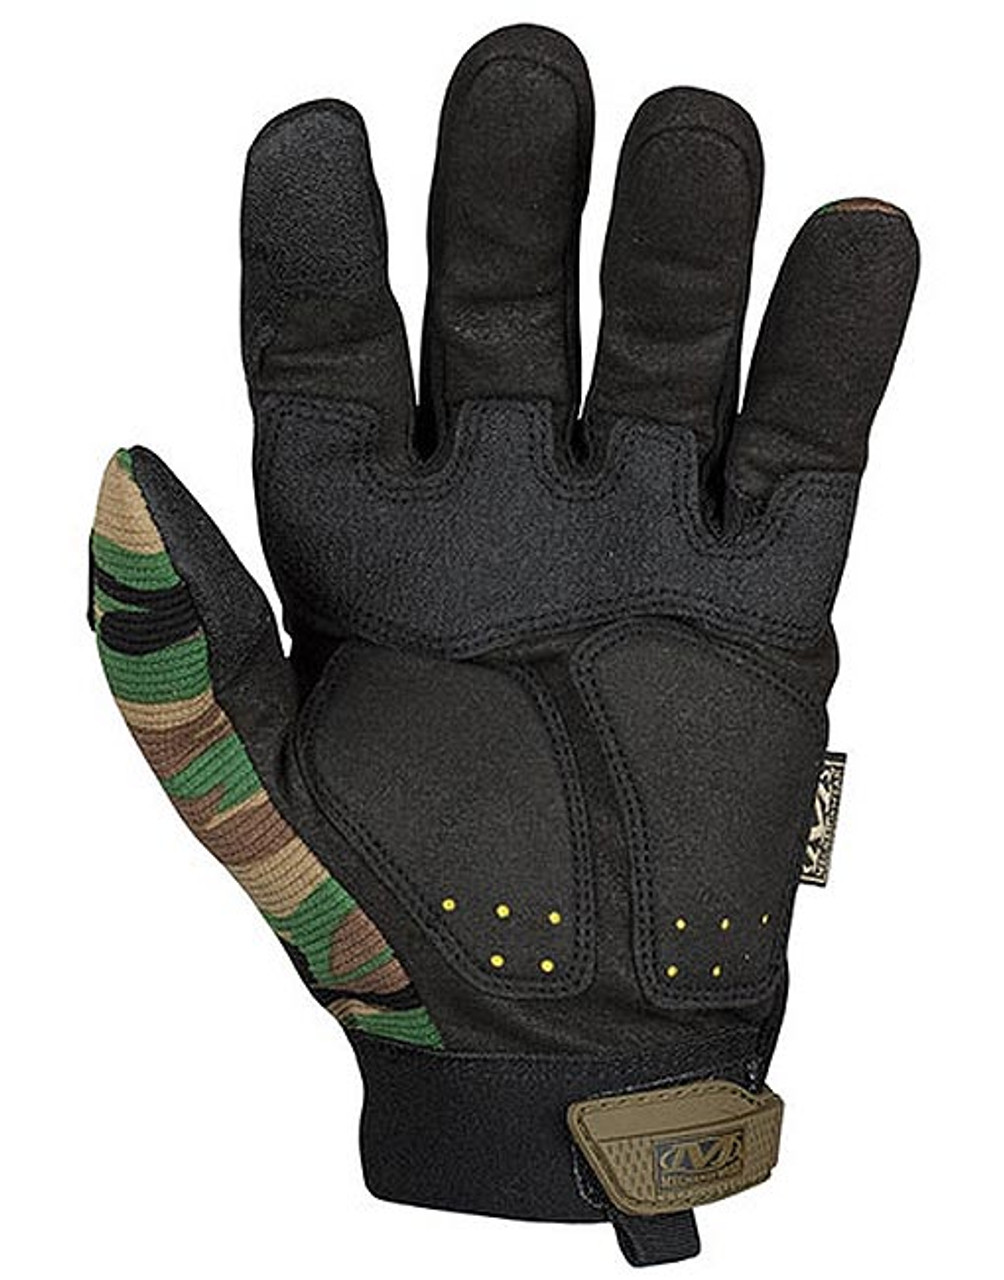 Mechanix Wear M-PACT Gloves - Woodland Camo - ROCKSTAR Tactical